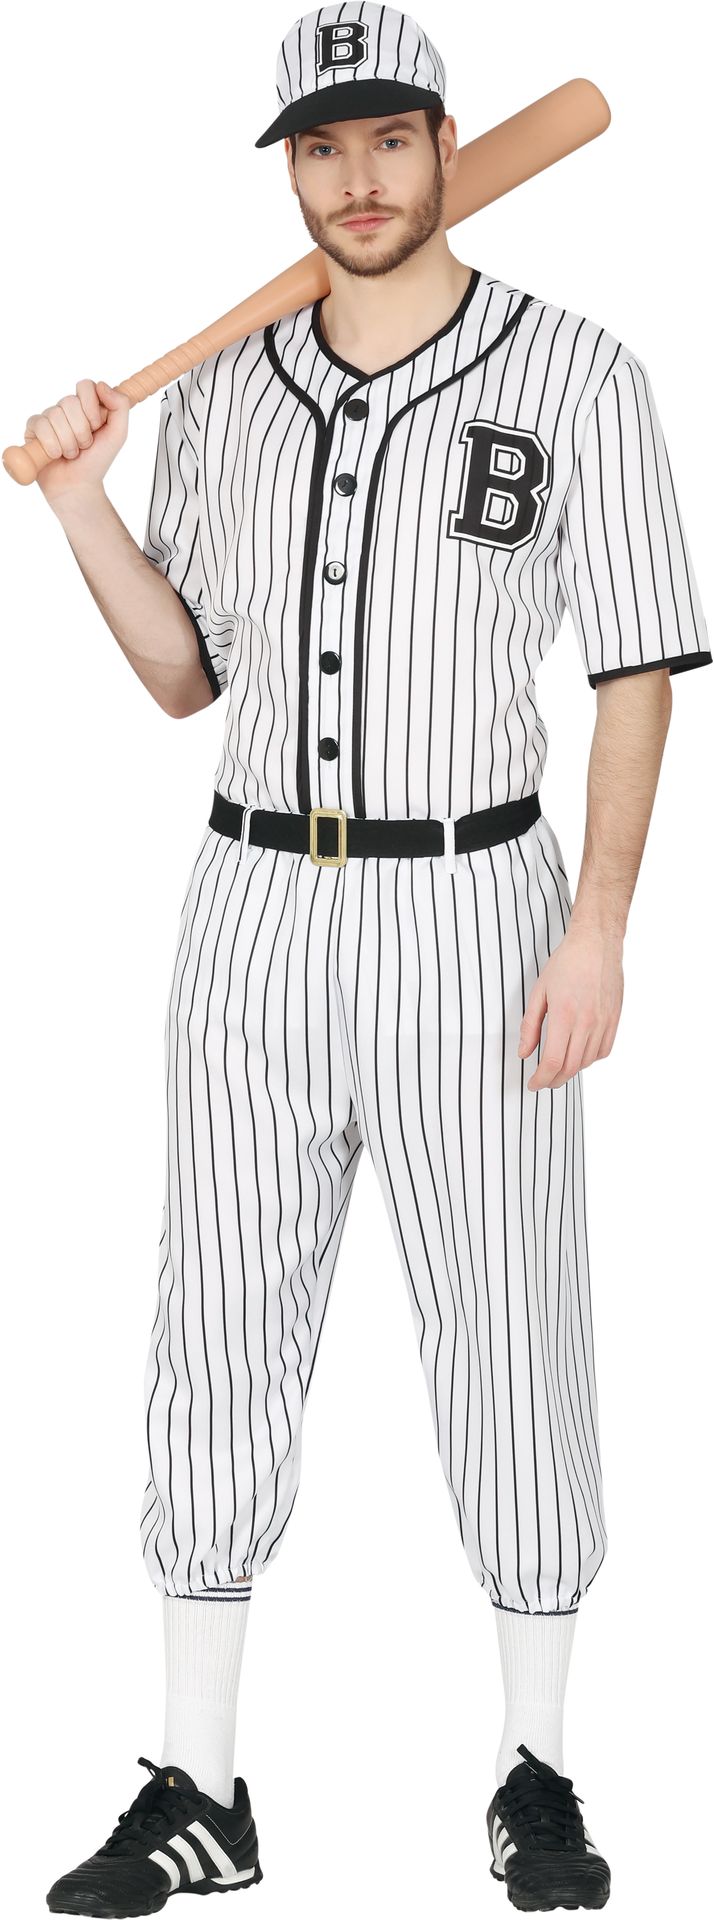 Baseball speler outfit heren